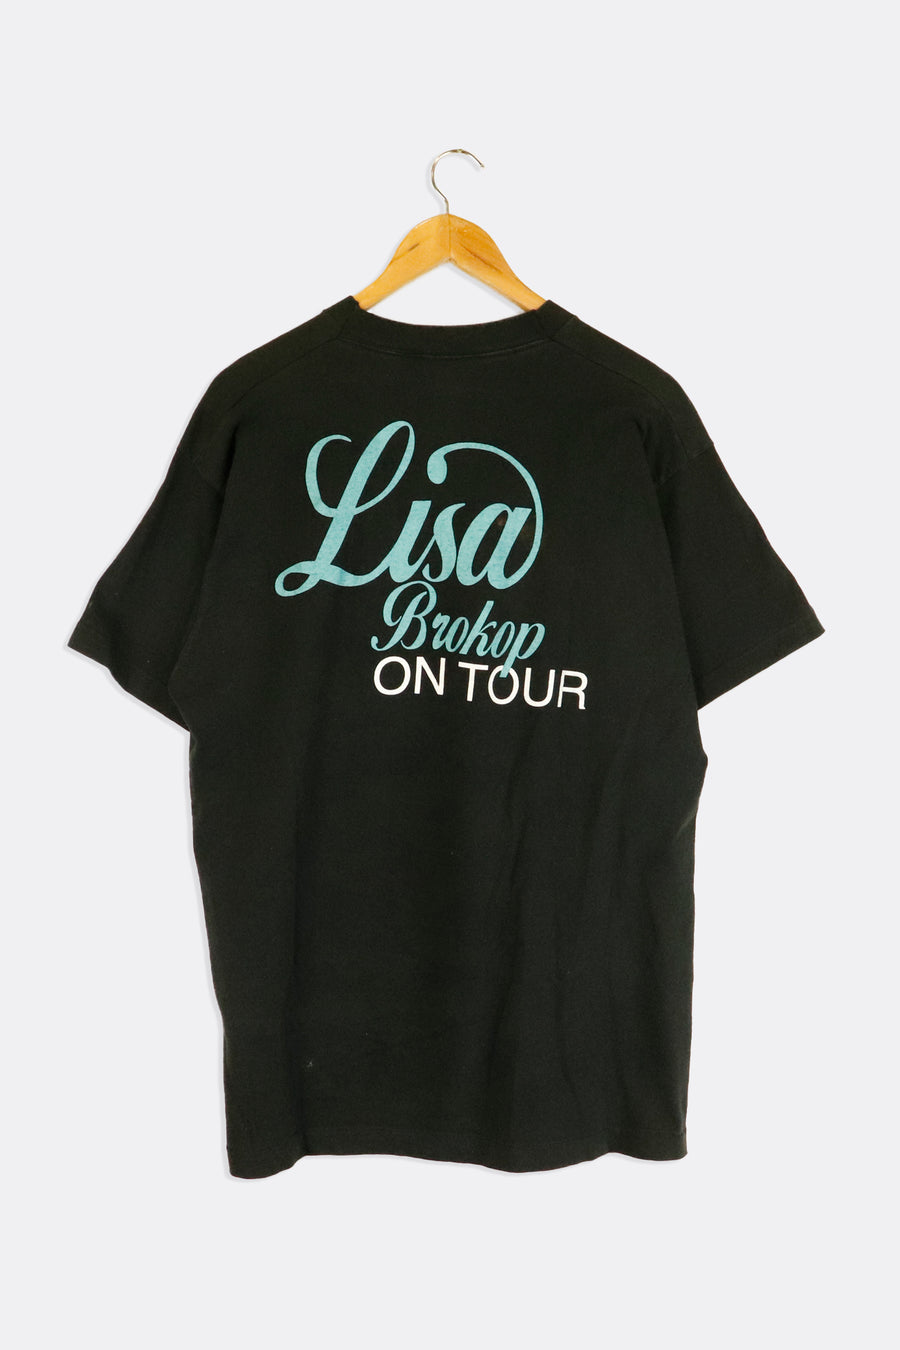 Vintage Lisa Brokop On Tour Monocoloured Portrait Vinyl T Shirt Sz L